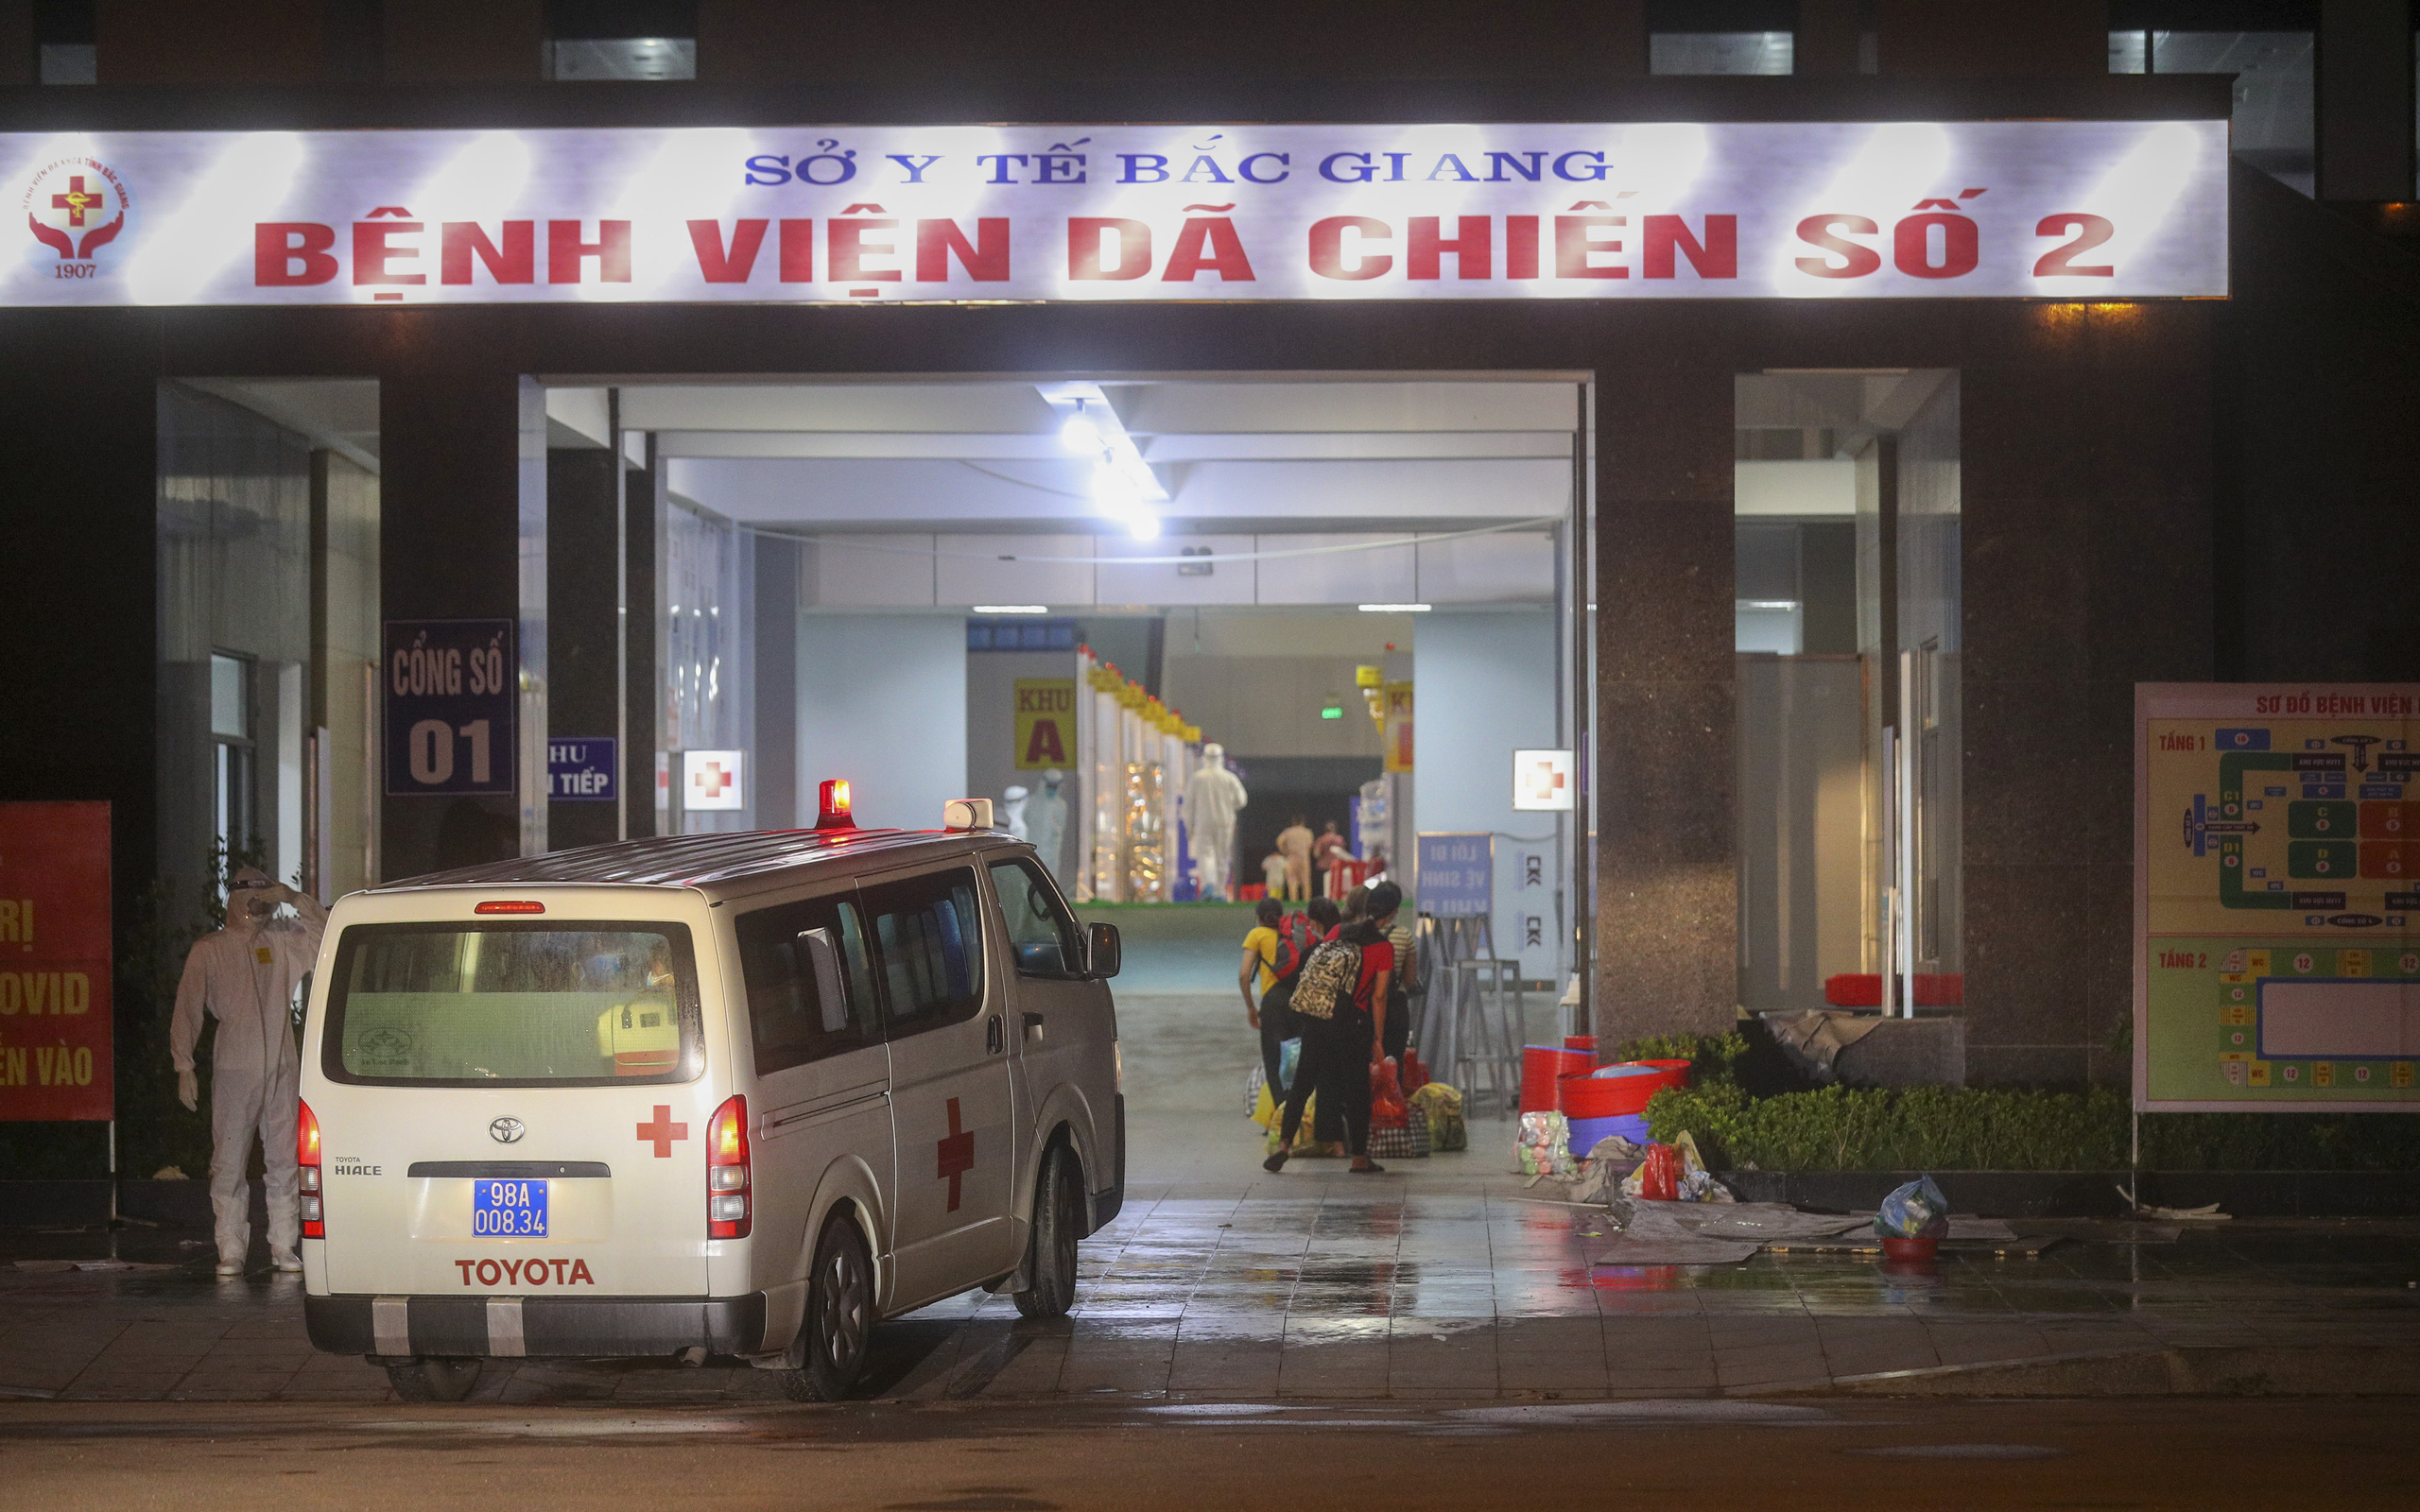 Bệnh viện dã chiến số 2 Bắc Giang tiếp nhận hơn 500 bệnh nhân Covid-19